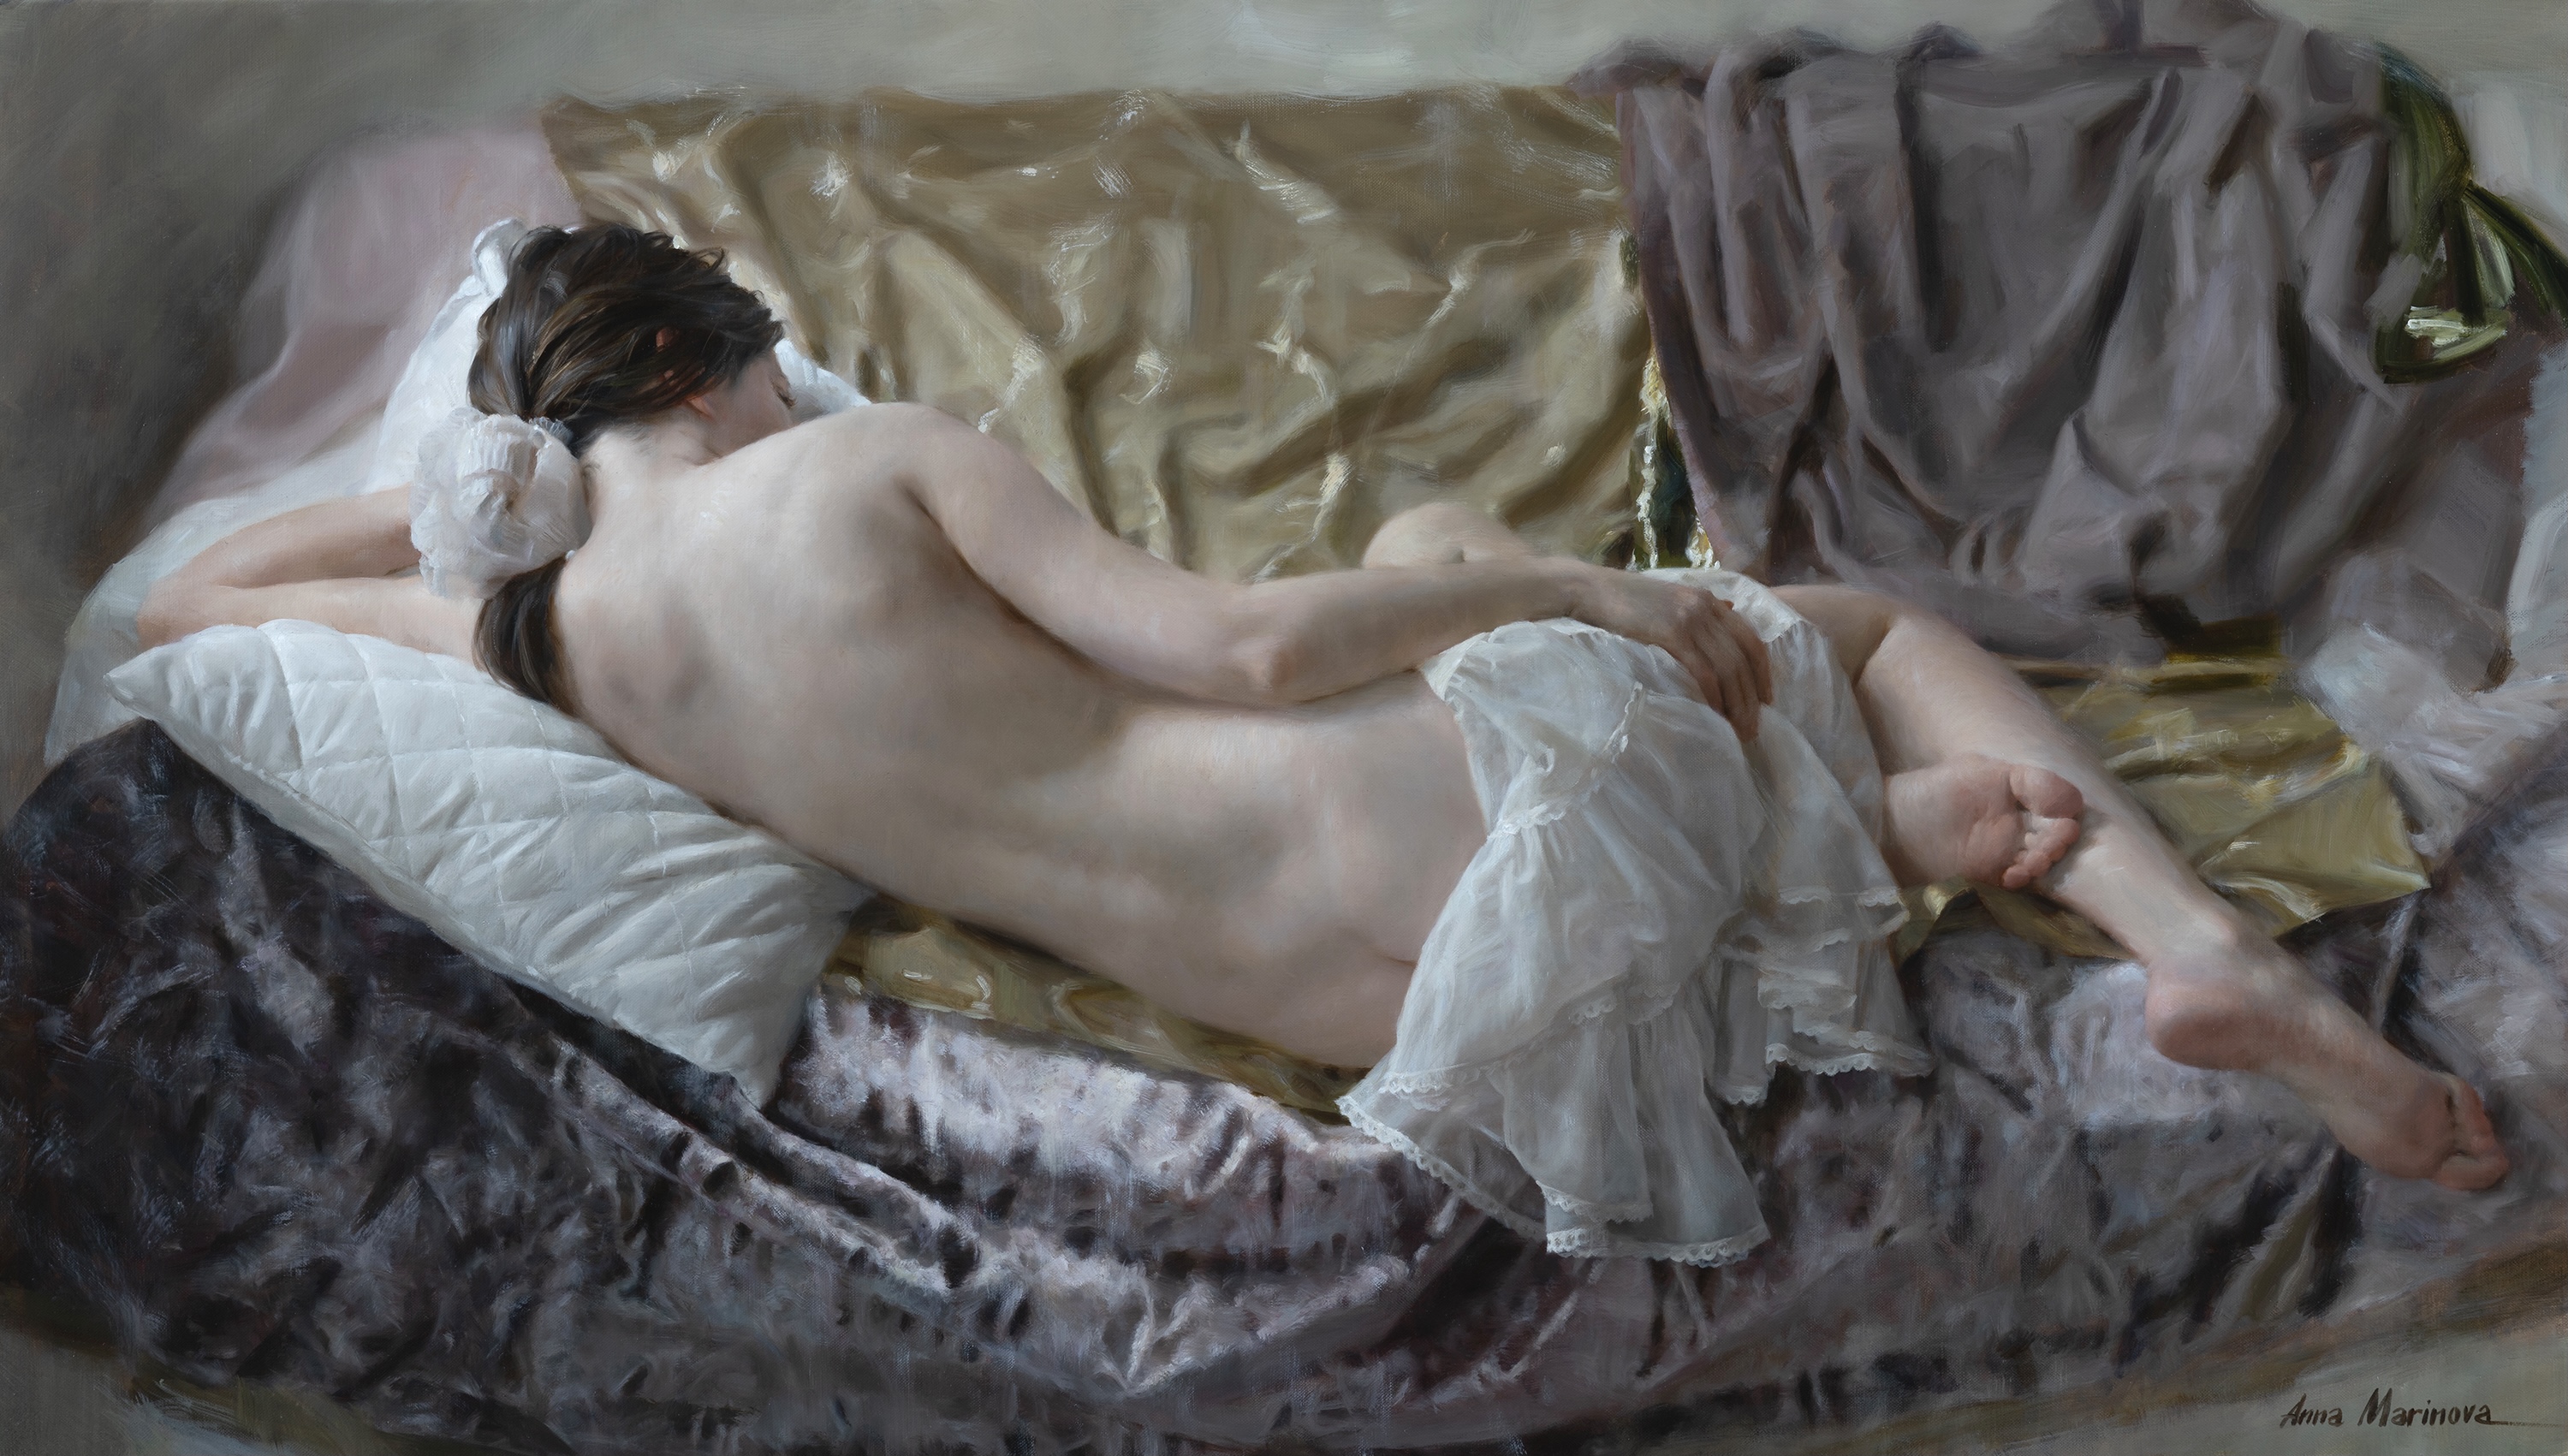 Silk and Velvet - 1, Anna Marinova, Buy the painting Oil